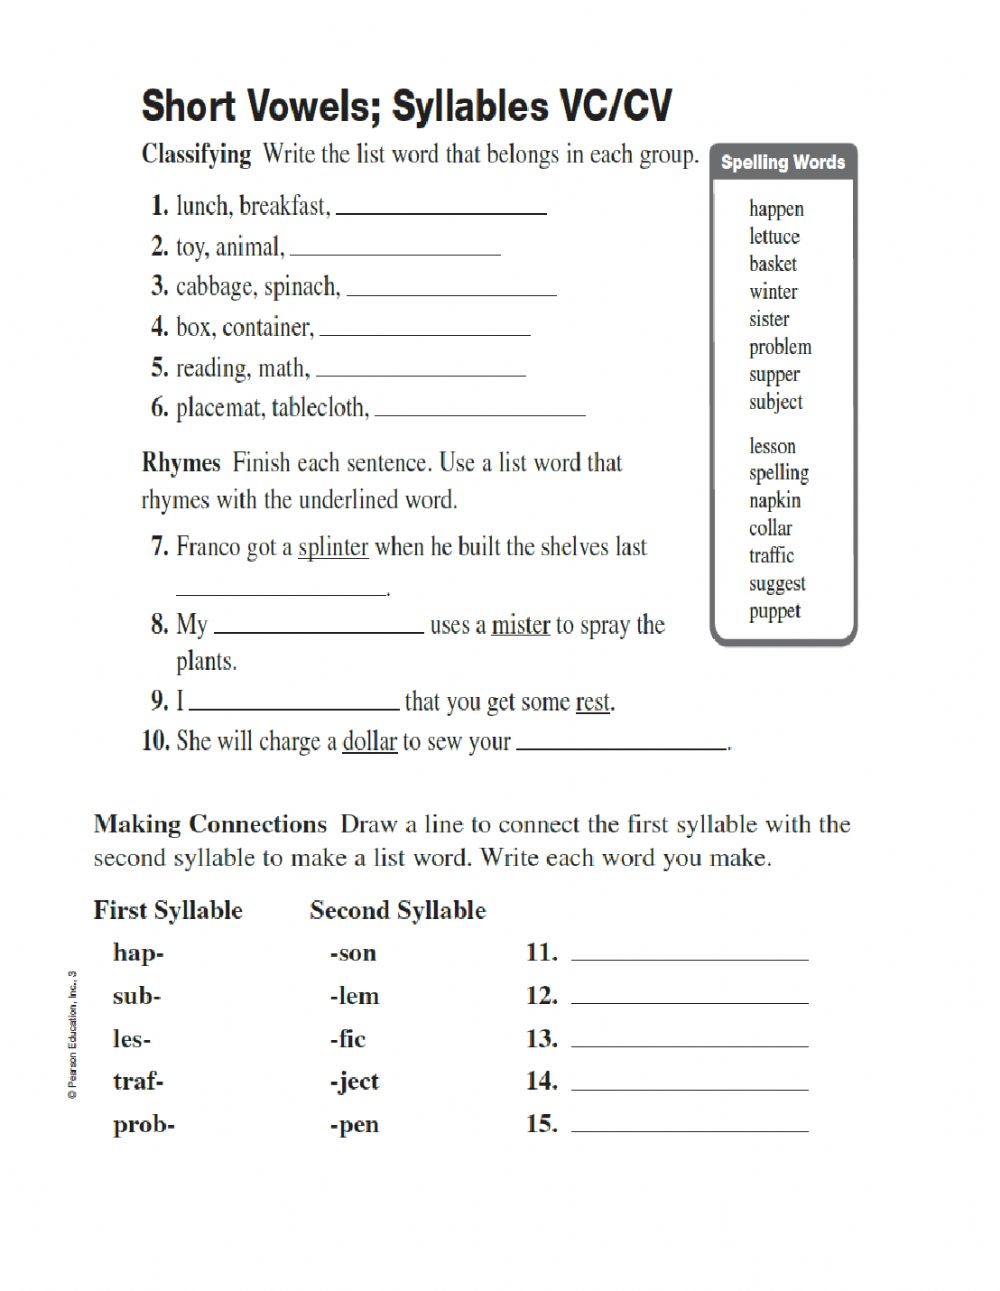 short-vowels-vccv-worksheet-math-worksheet-answers